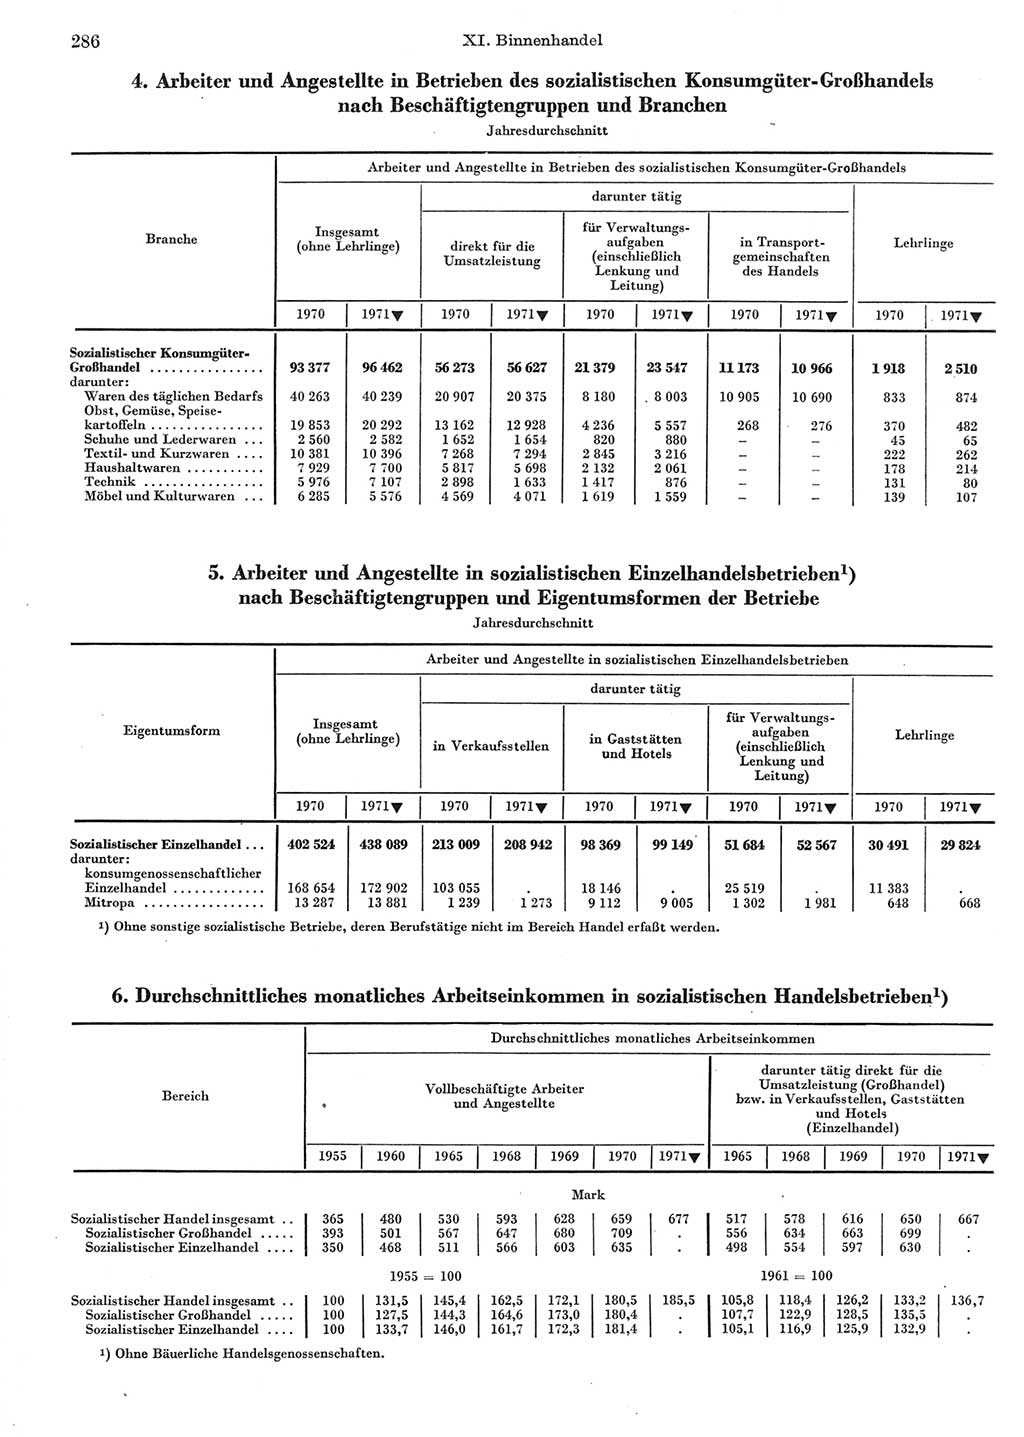 Statistisches Jahrbuch der Deutschen Demokratischen Republik (DDR) 1972, Seite 286 (Stat. Jb. DDR 1972, S. 286)